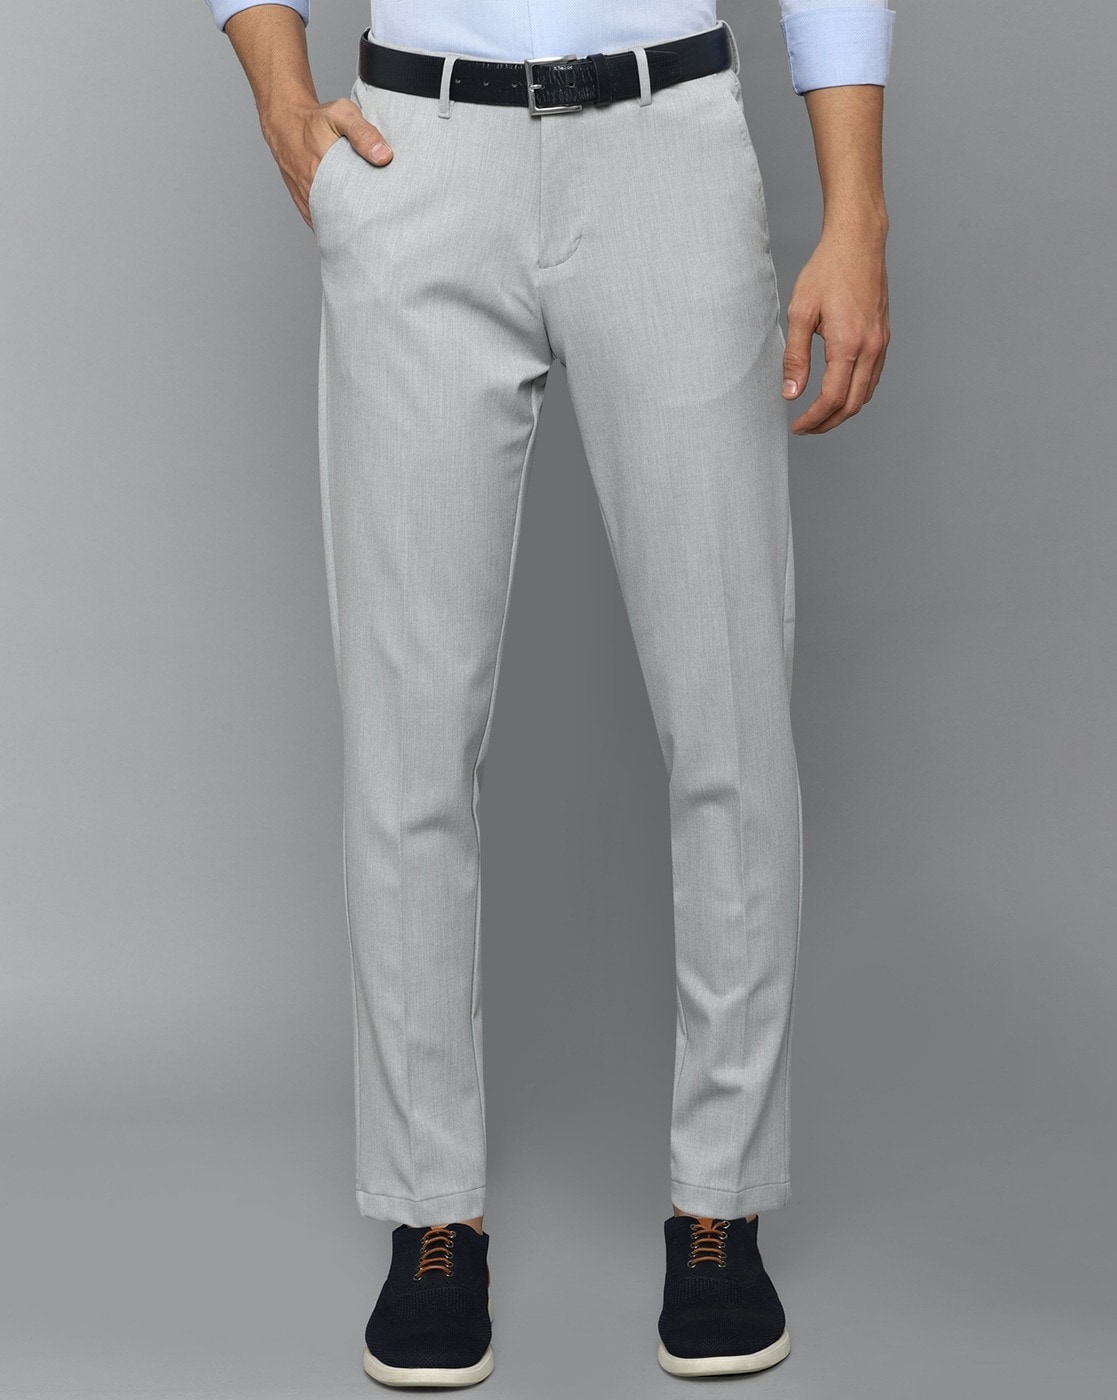 Allen Solly Slim Fit Men Grey Trousers  Buy Allen Solly Slim Fit Men Grey  Trousers Online at Best Prices in India  Flipkartcom